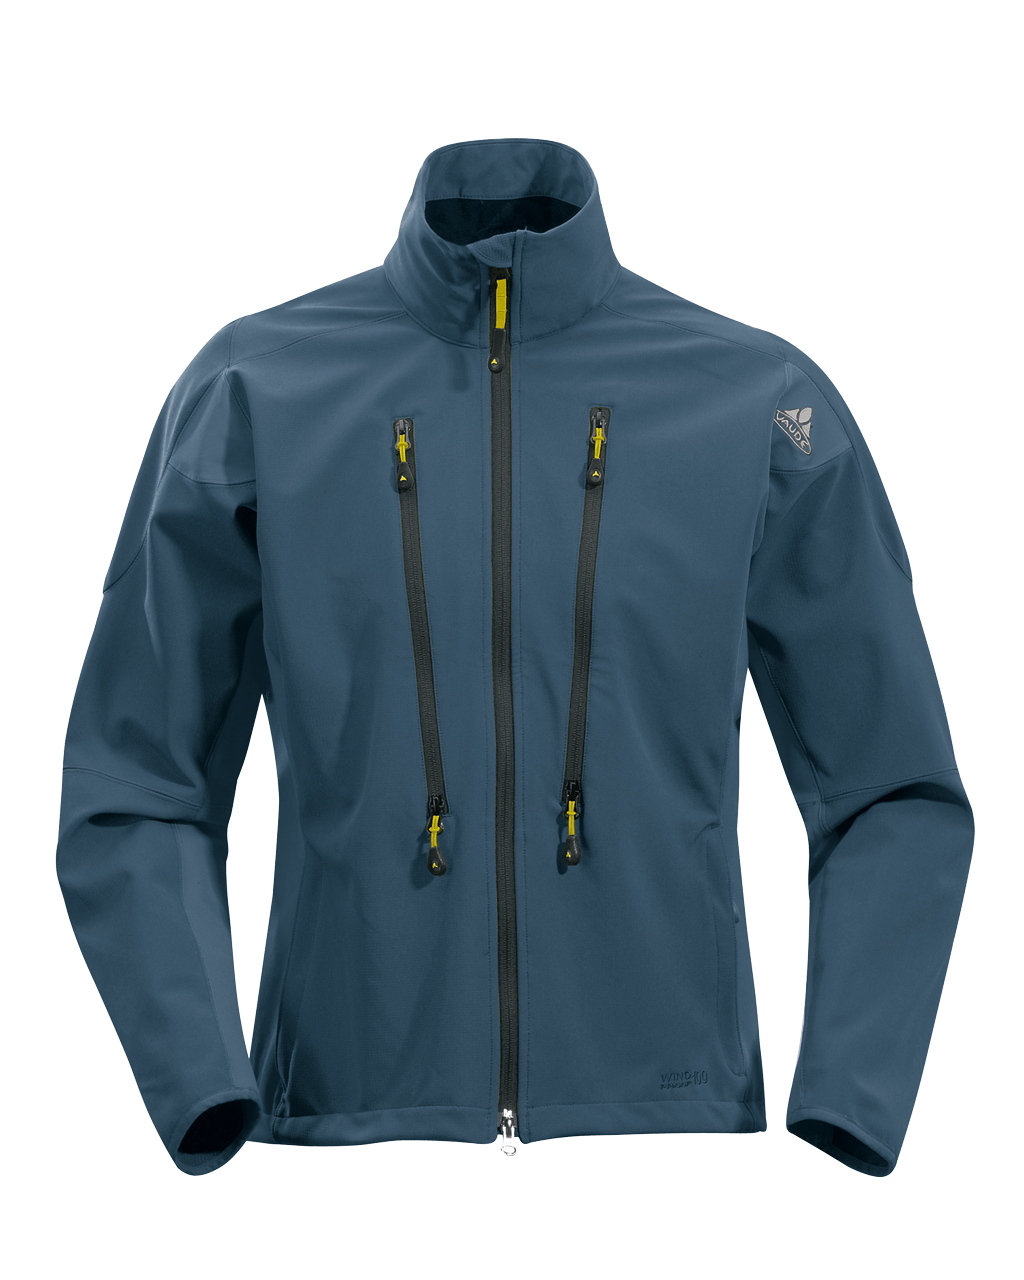 Vaude - Техничная куртка для скитура Highway Jacket